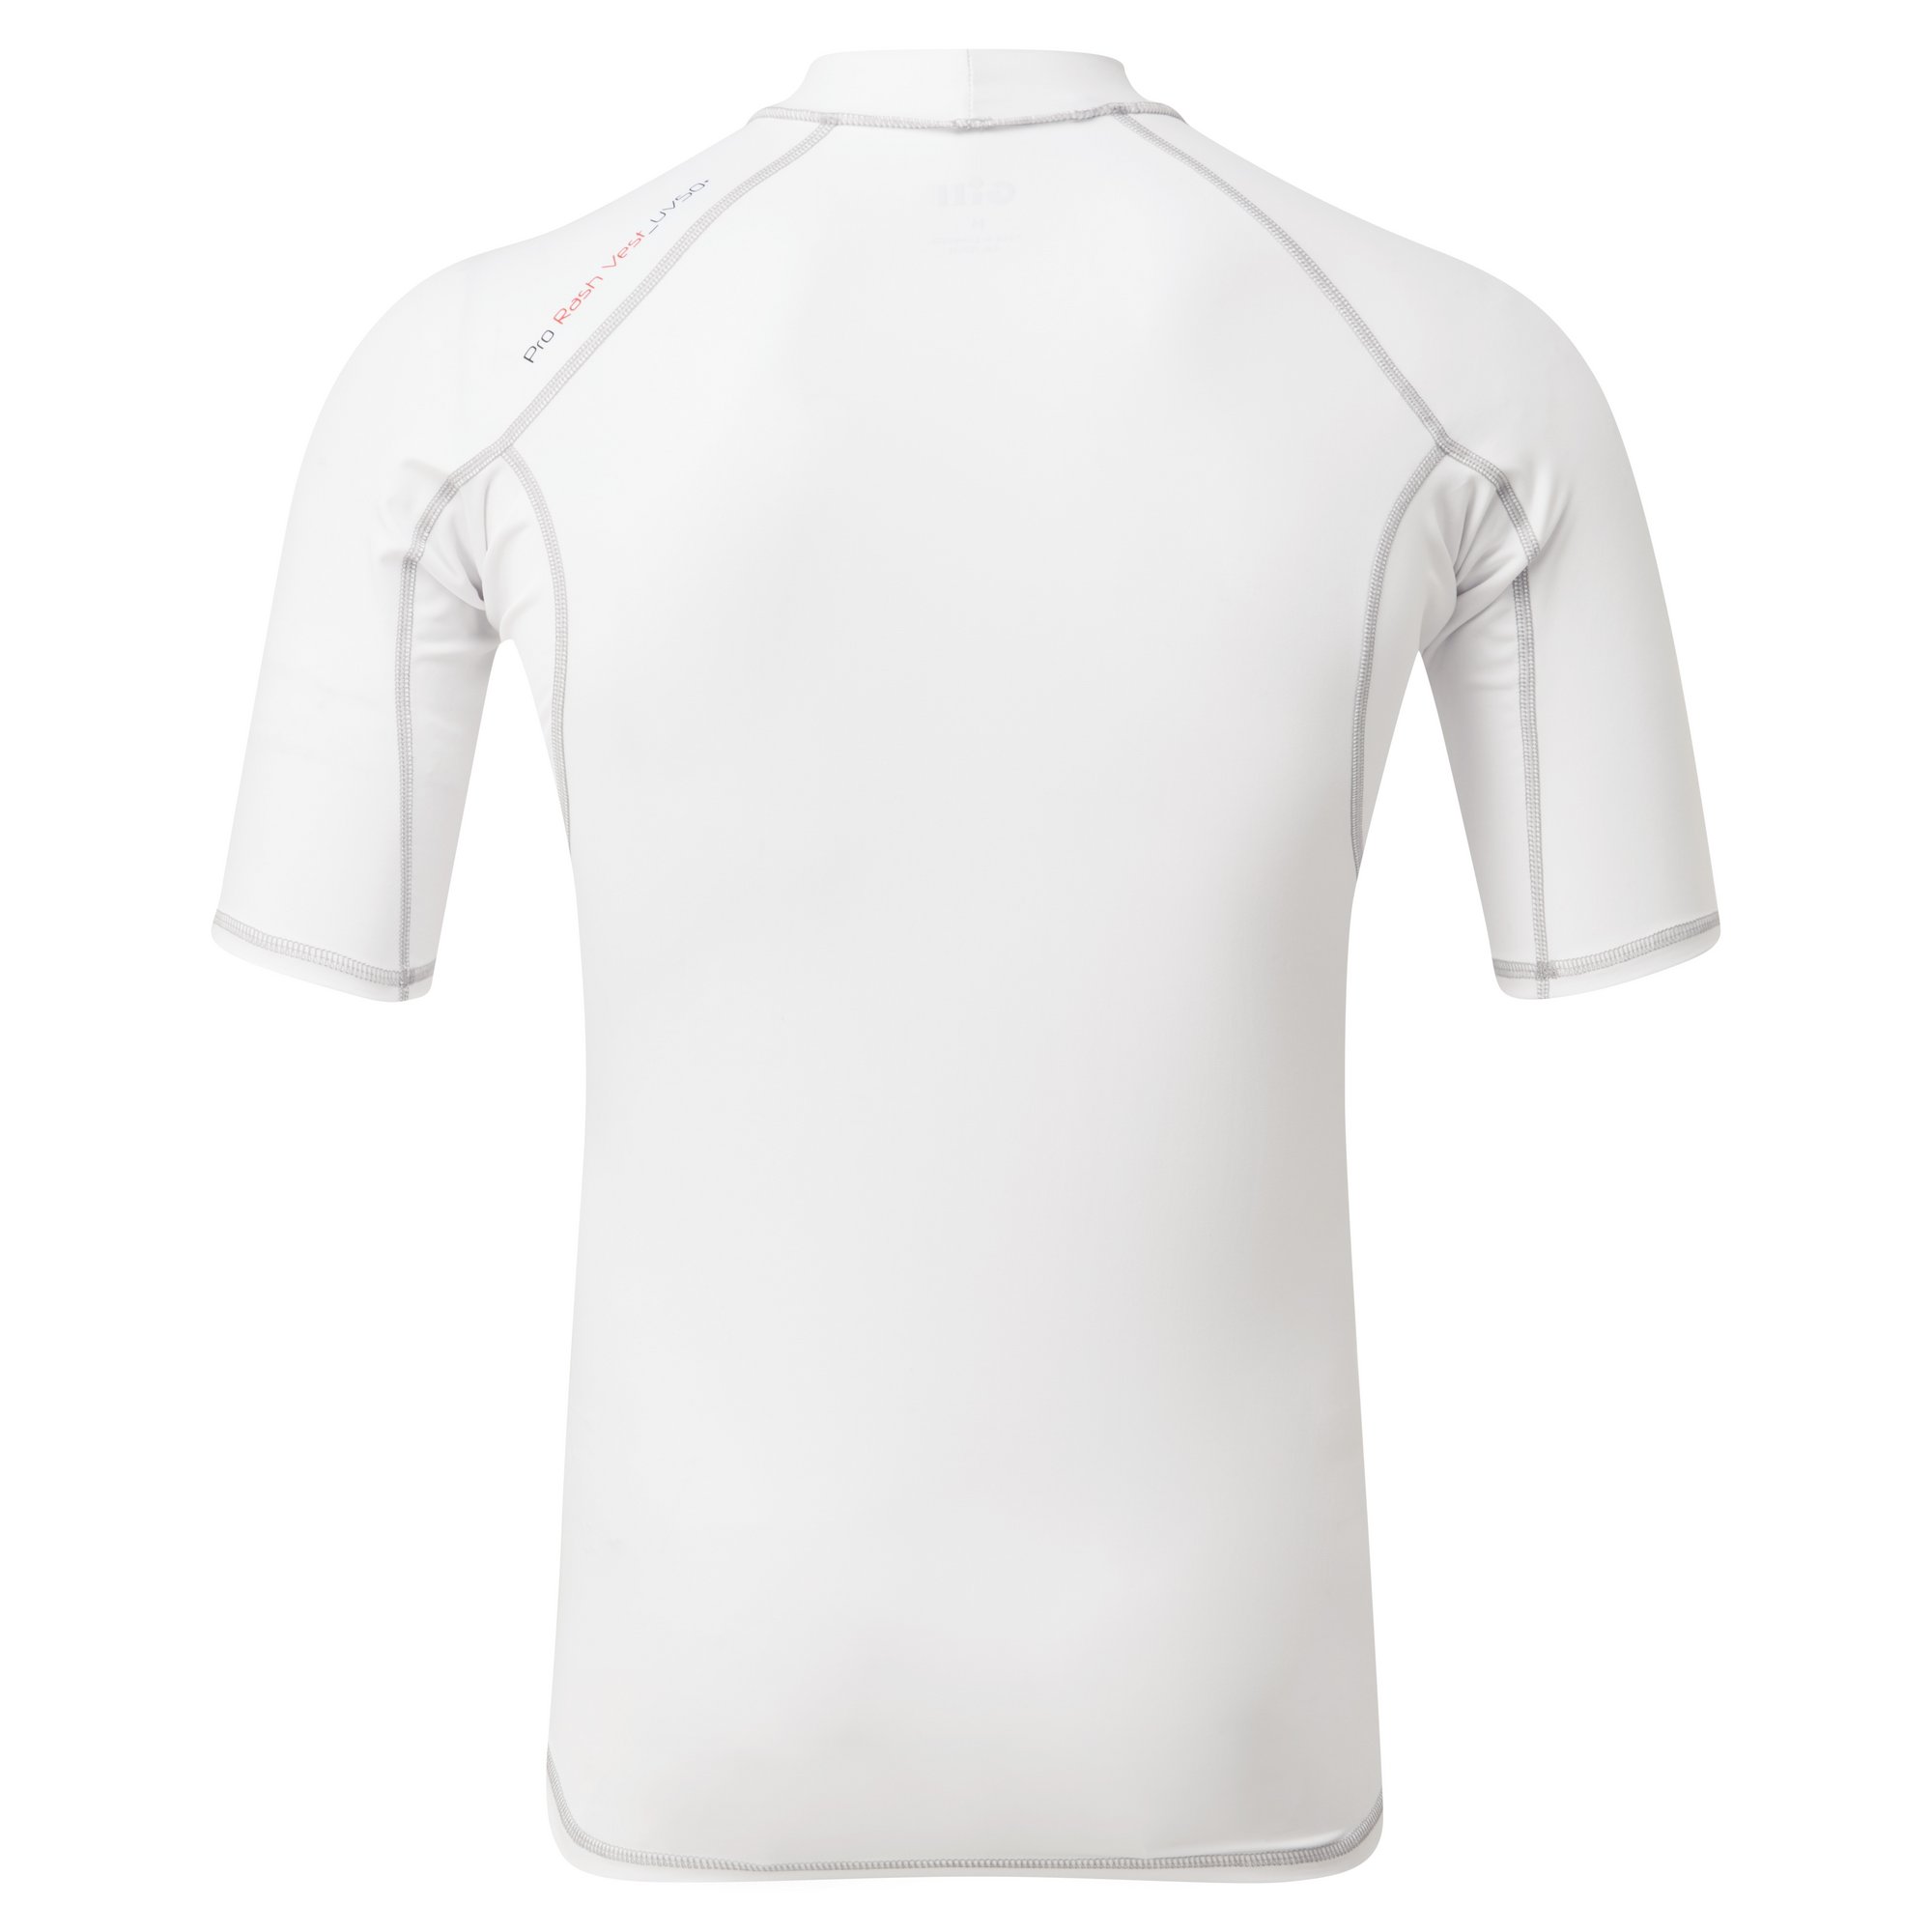 Men's Rash Vest - Short Sleeve - 5021-WHI01-2.jpg